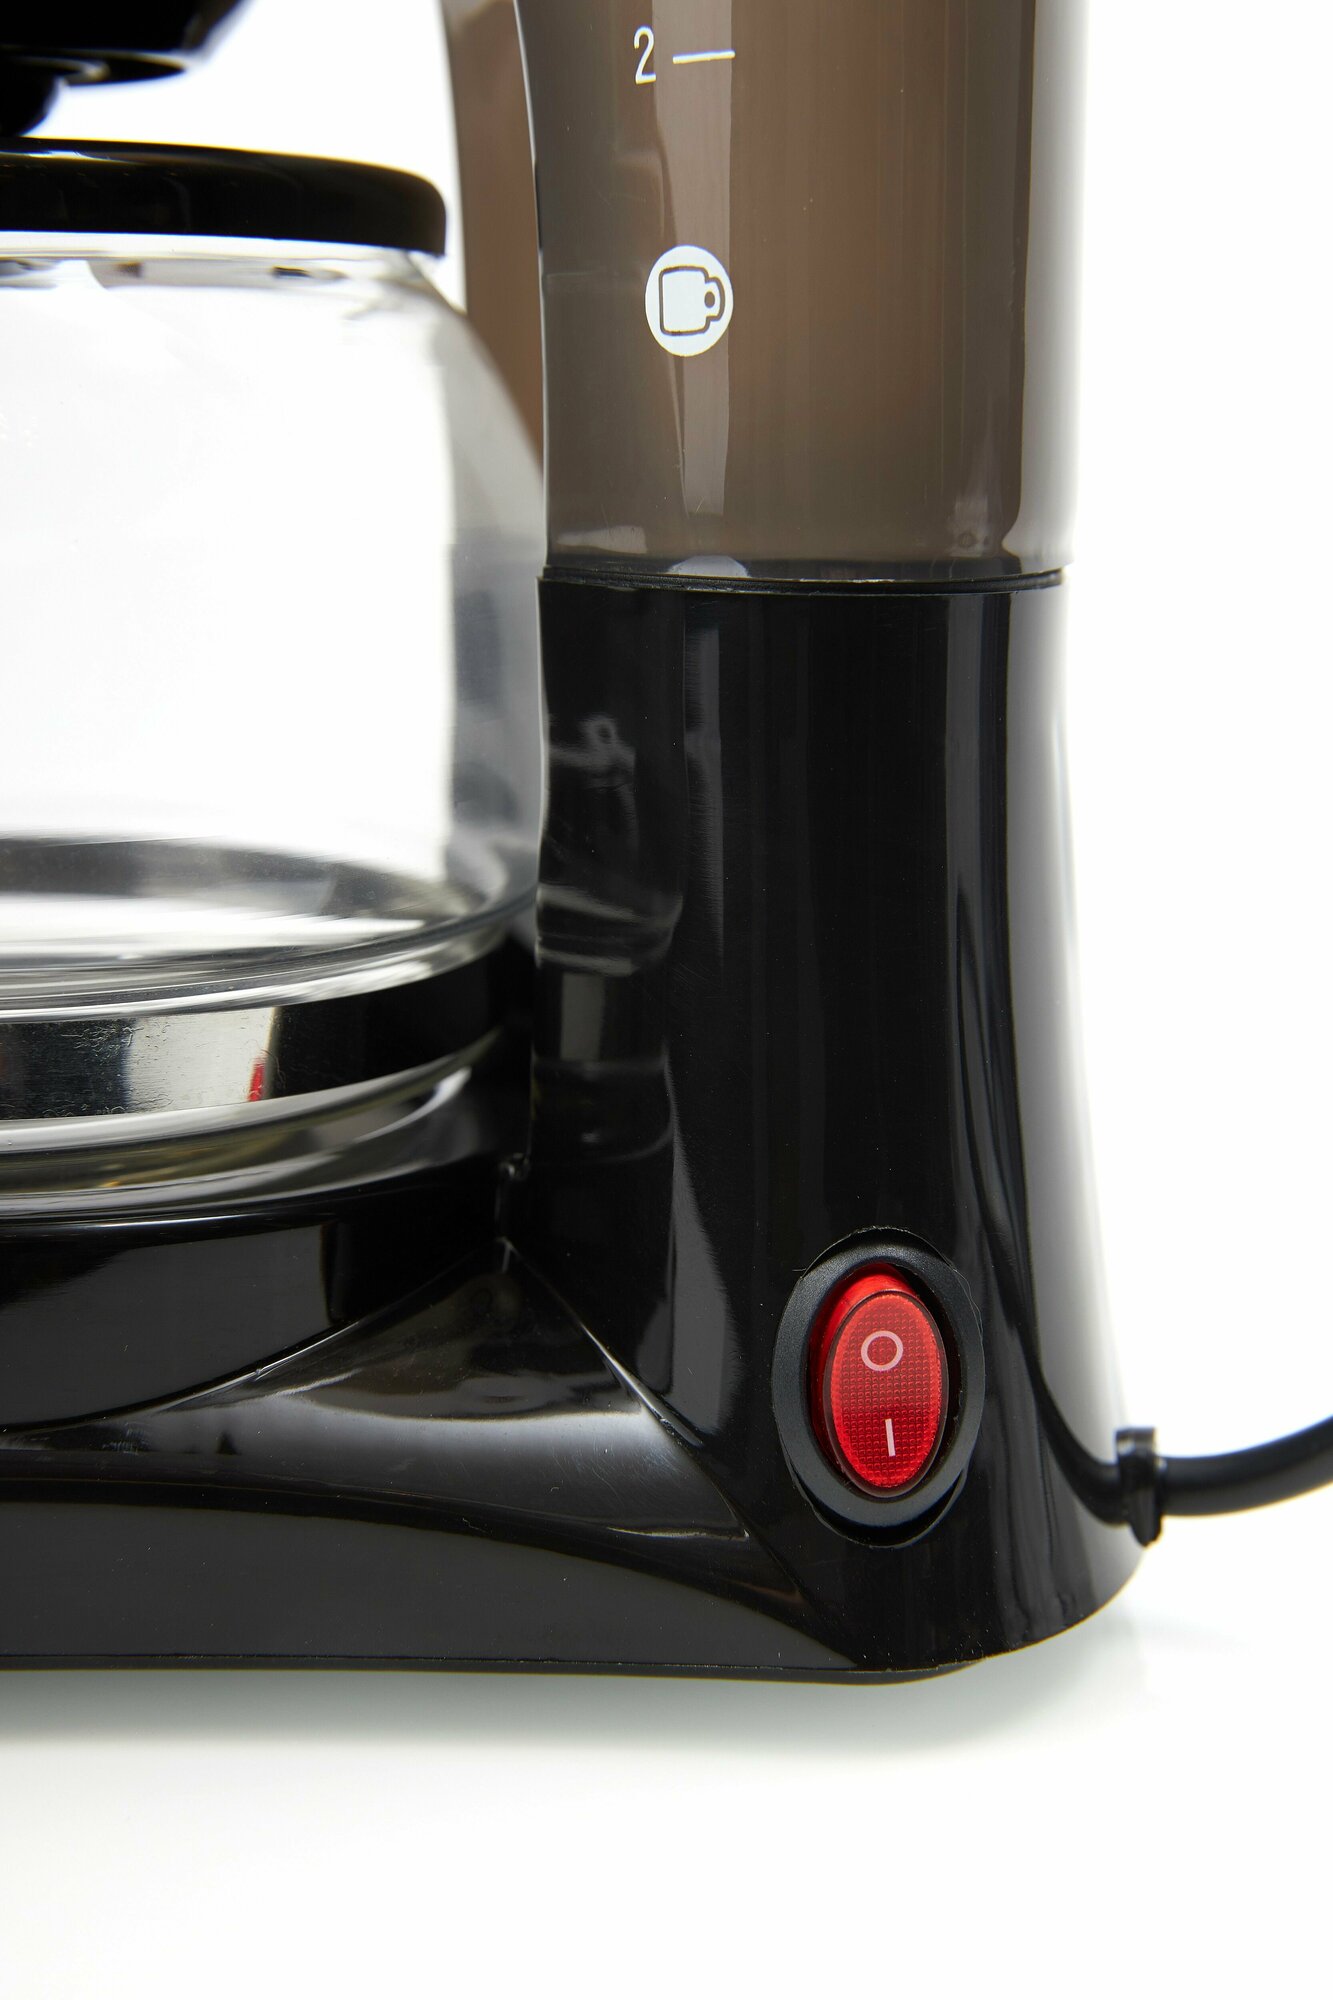 Кофеварка Goodhelper СМ-D102 черный